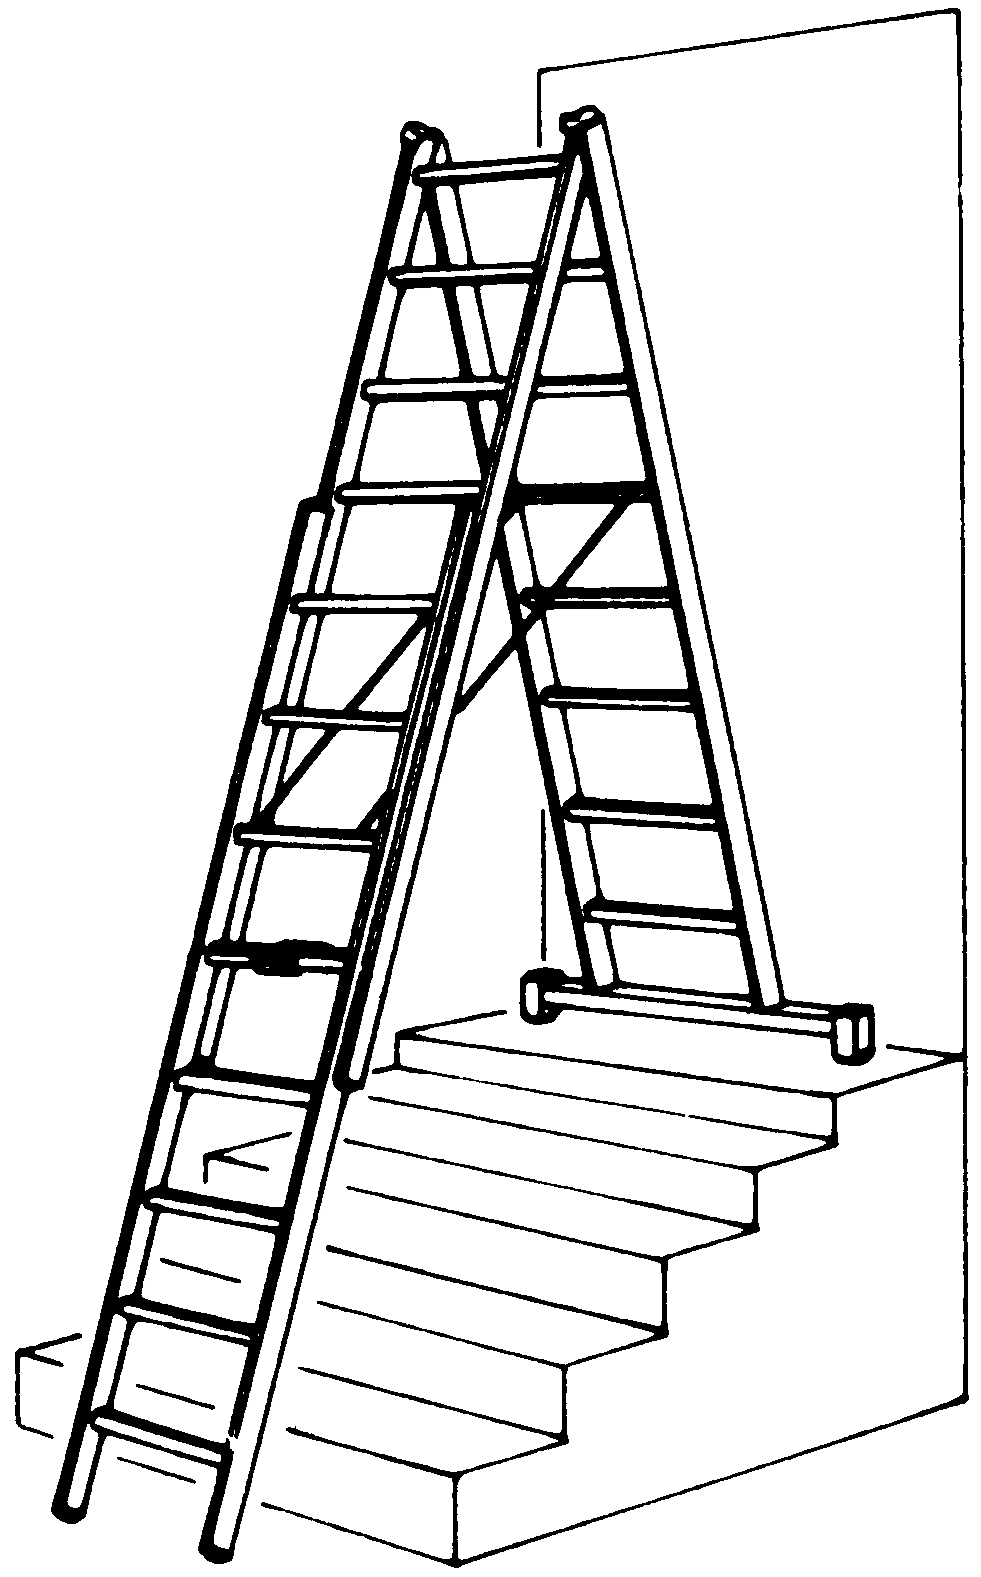 Treppenverstellungsklammer für Leitern Typ 8225